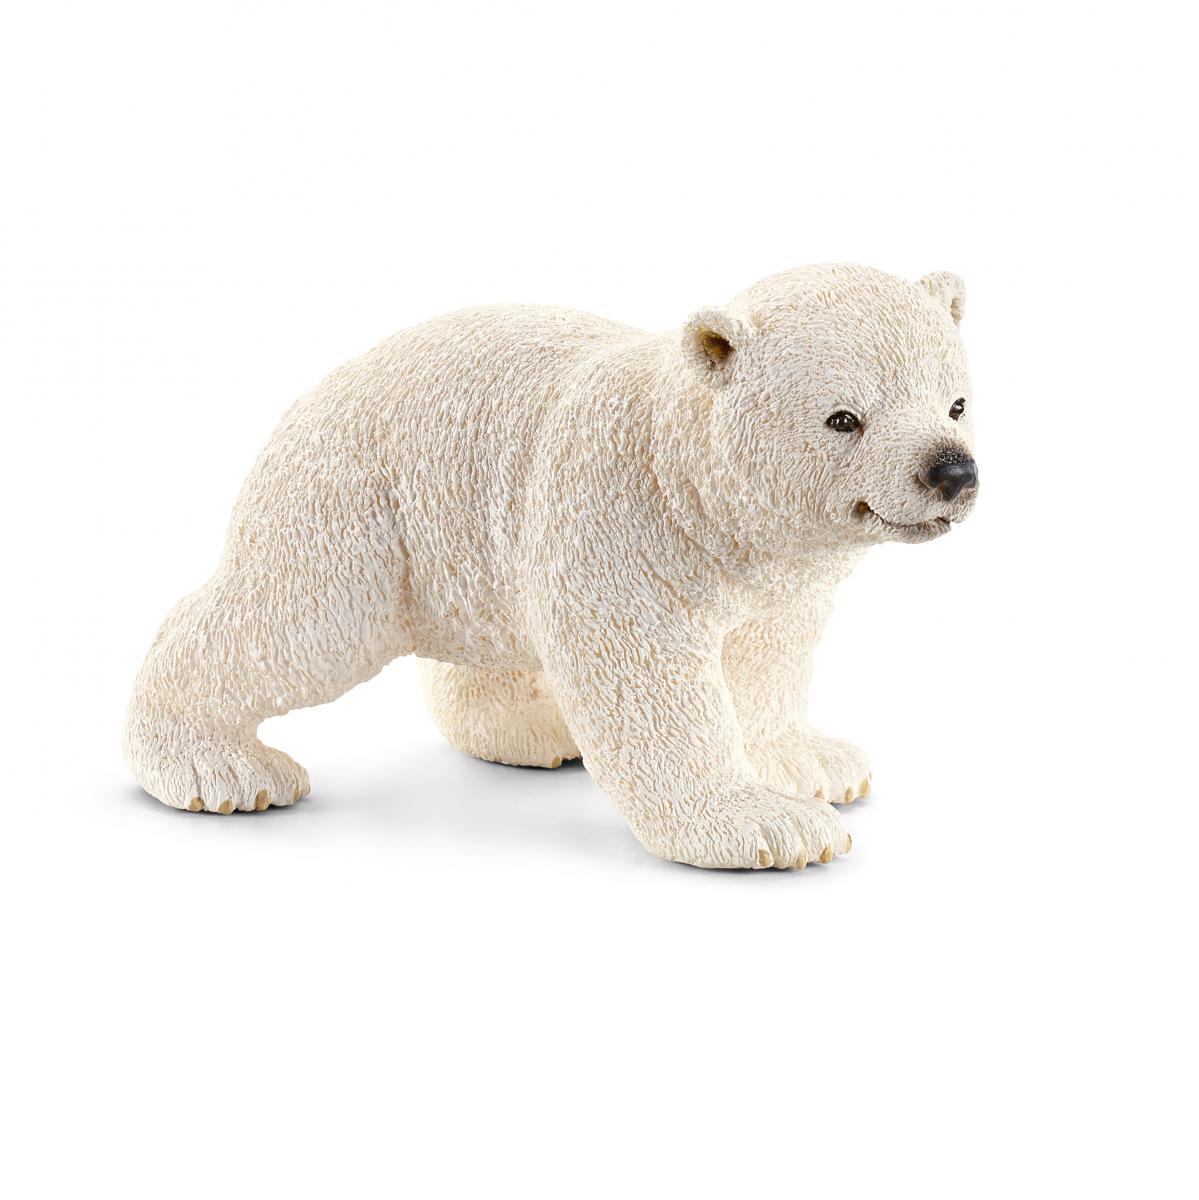 Polar Bear Cub, walking (Schleich #14708)